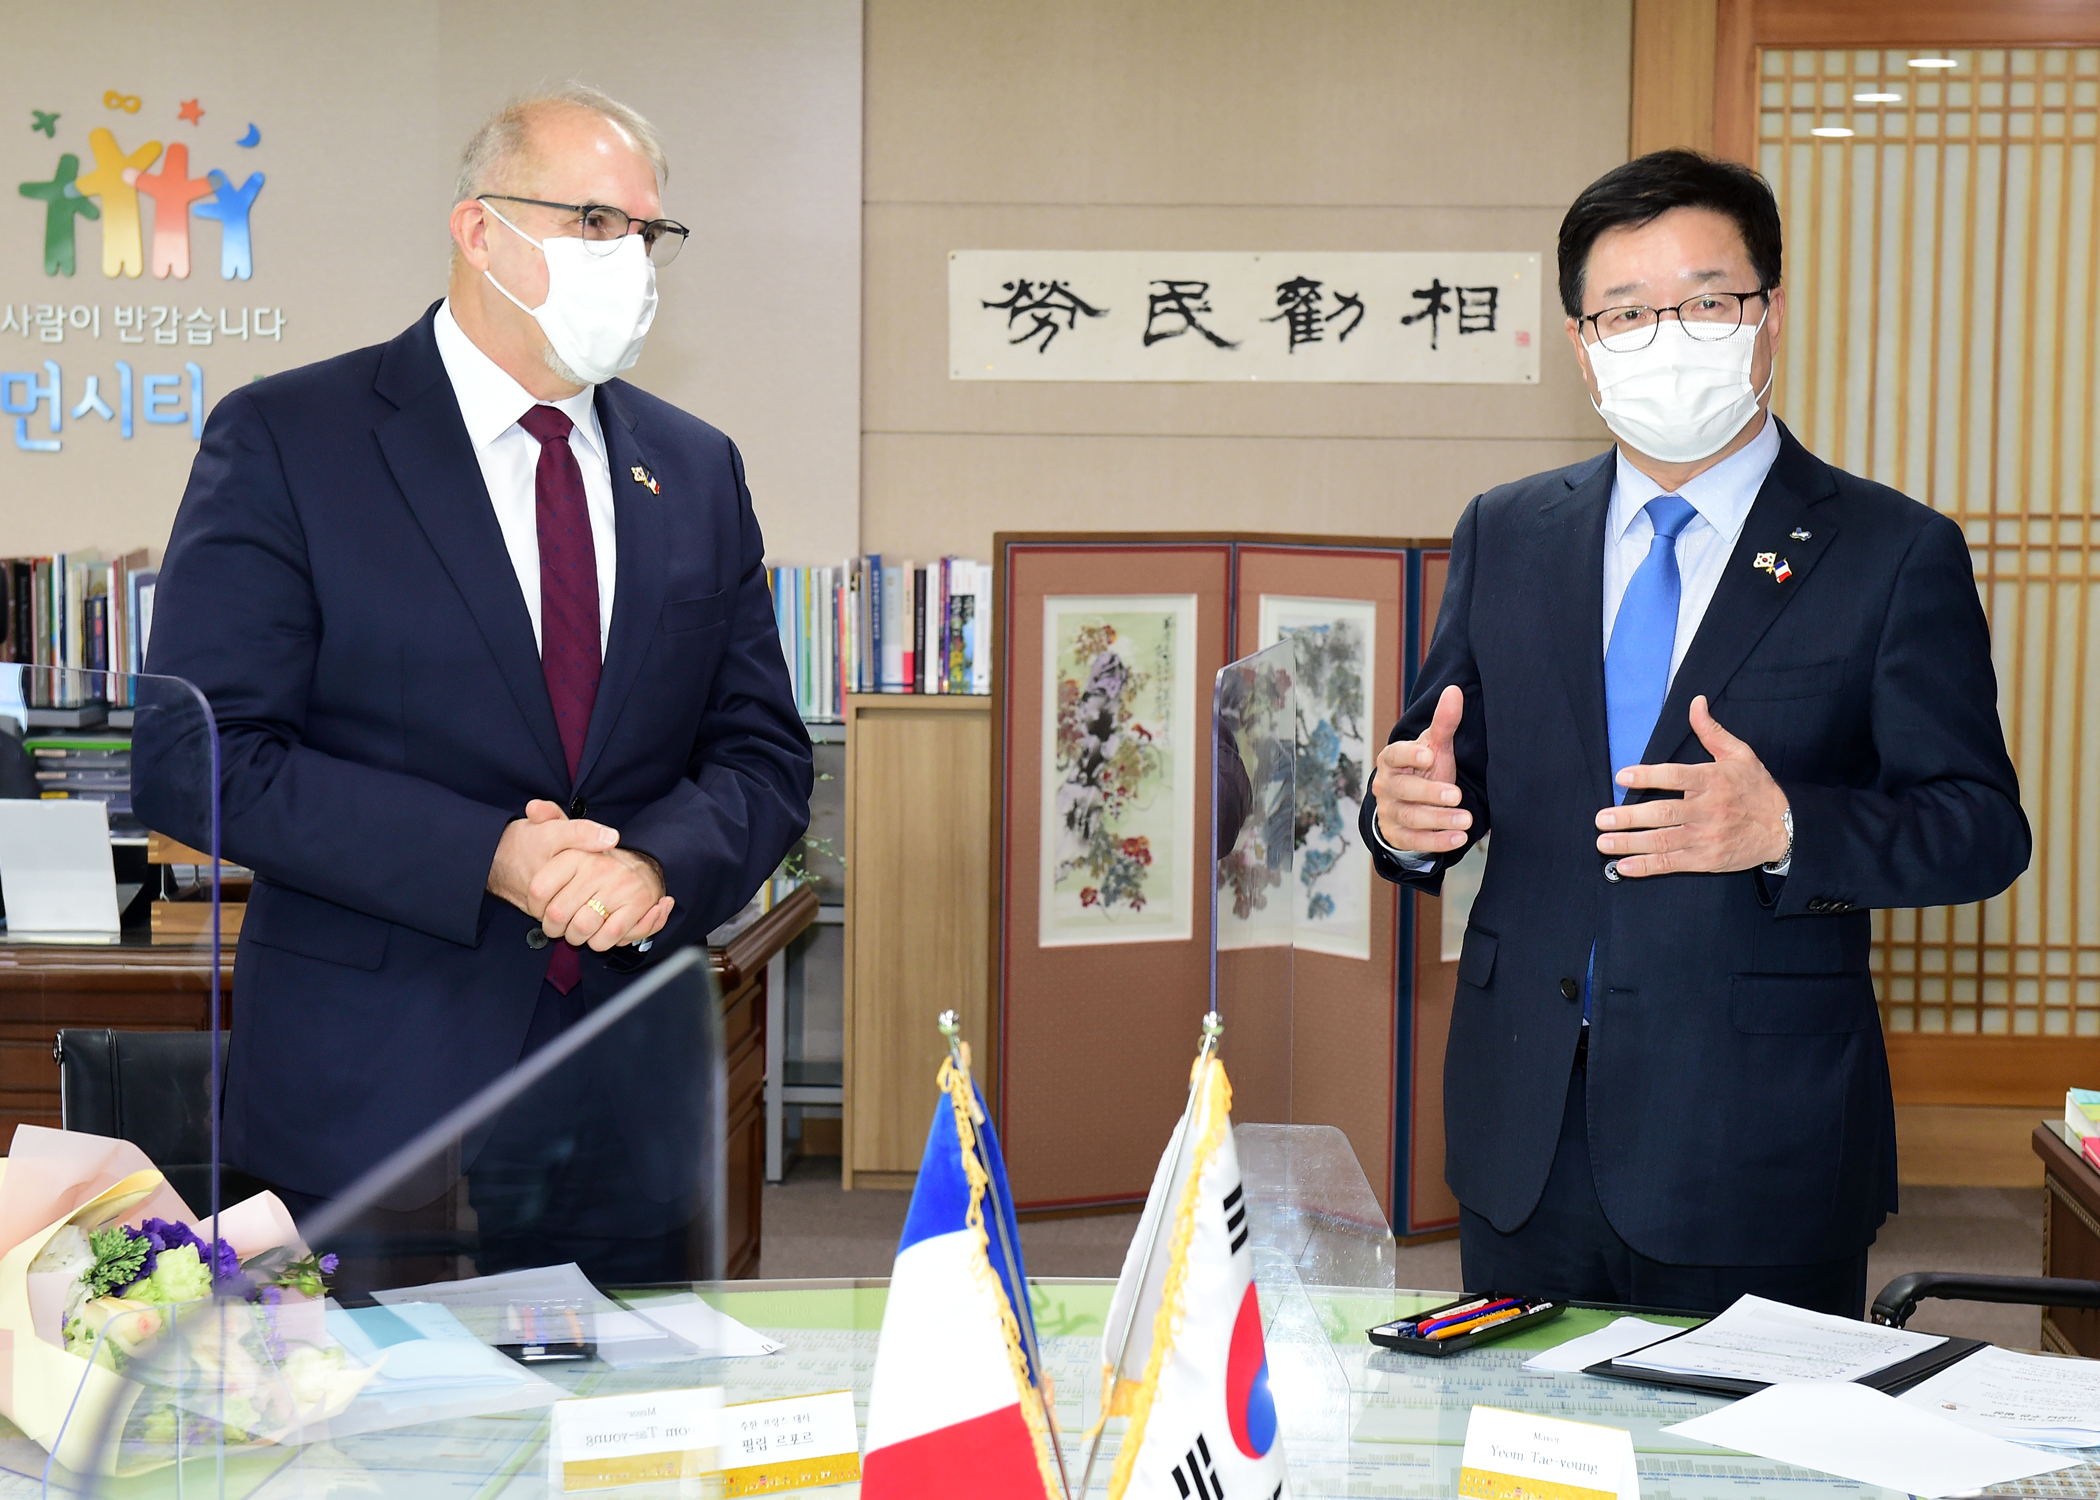 염태영 시장, 주한 프랑스 대사 만나 “한국·프랑스  우호협력에 이바지하겠다”